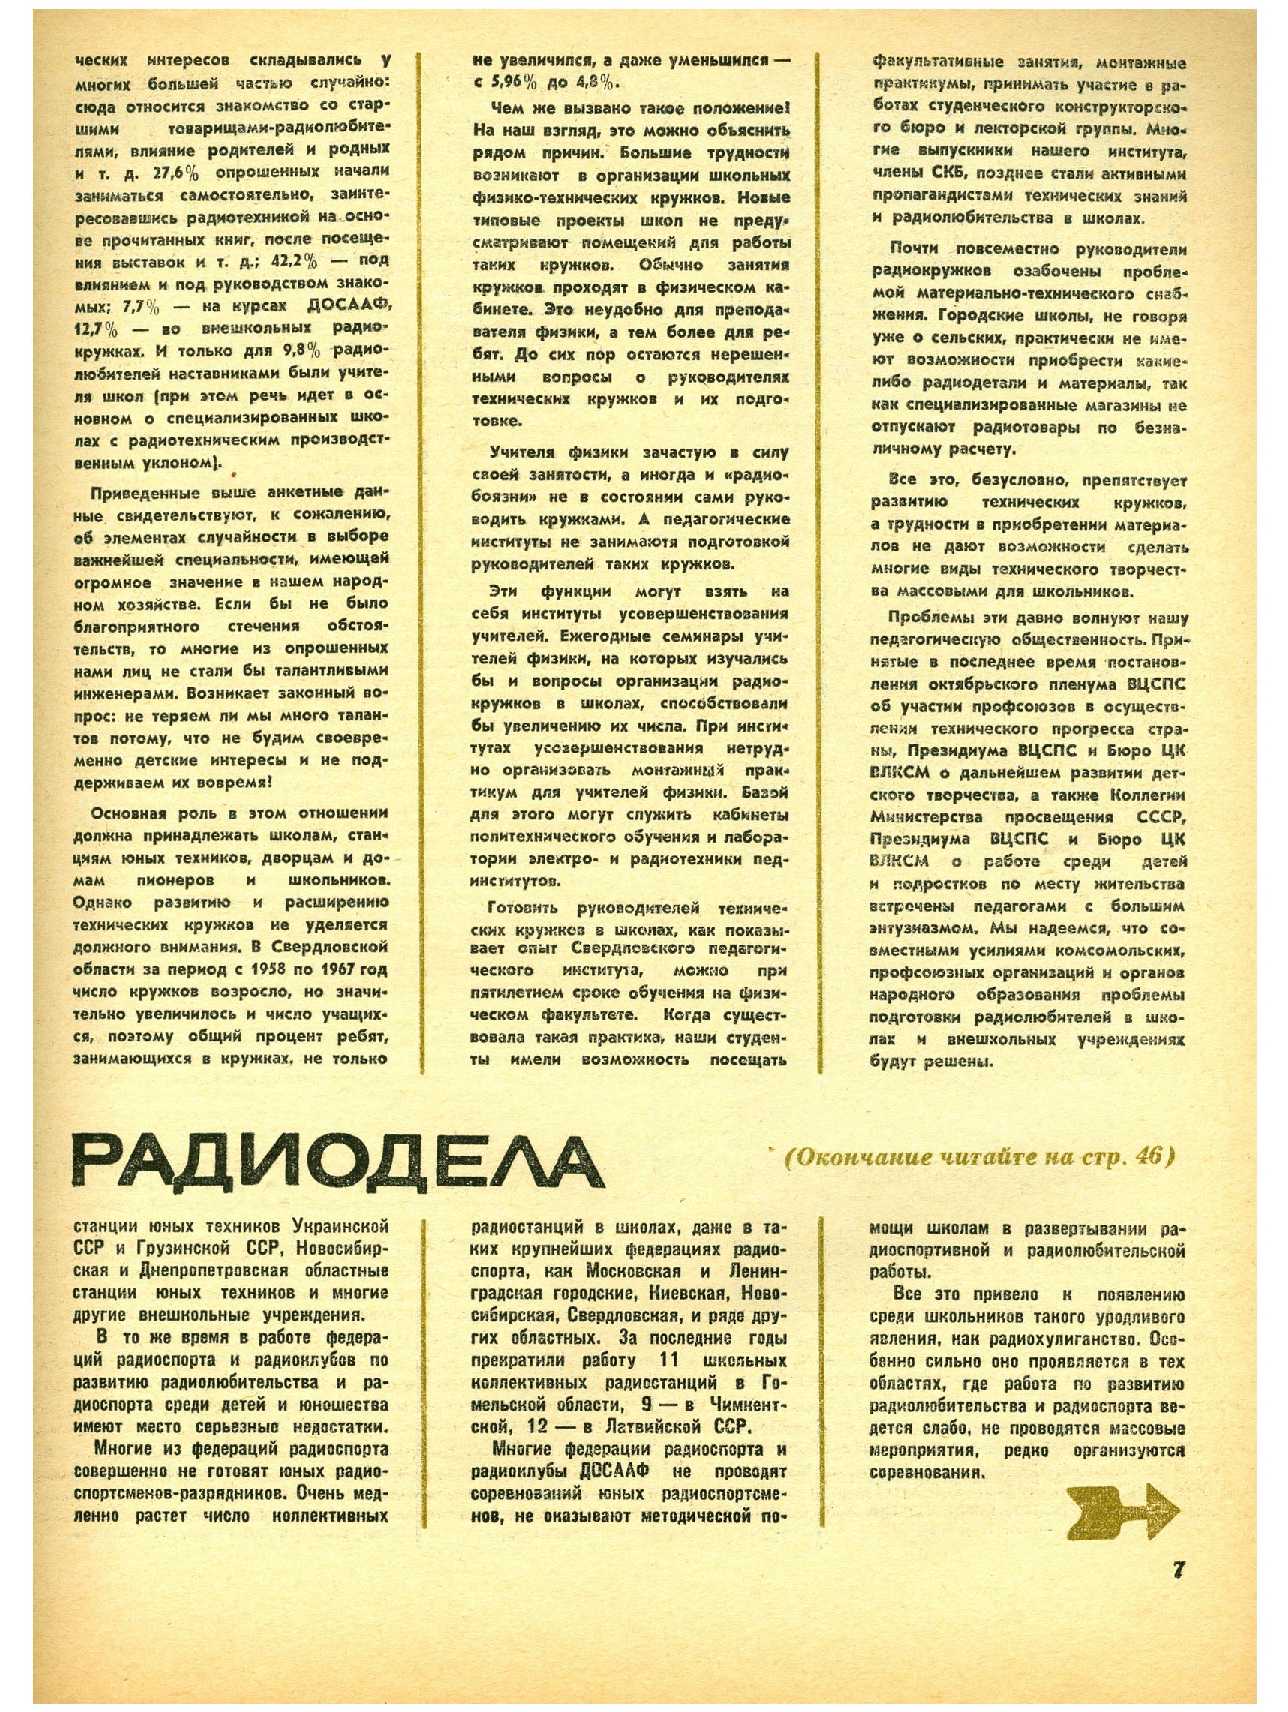 МК 1, 1970, 7 c.